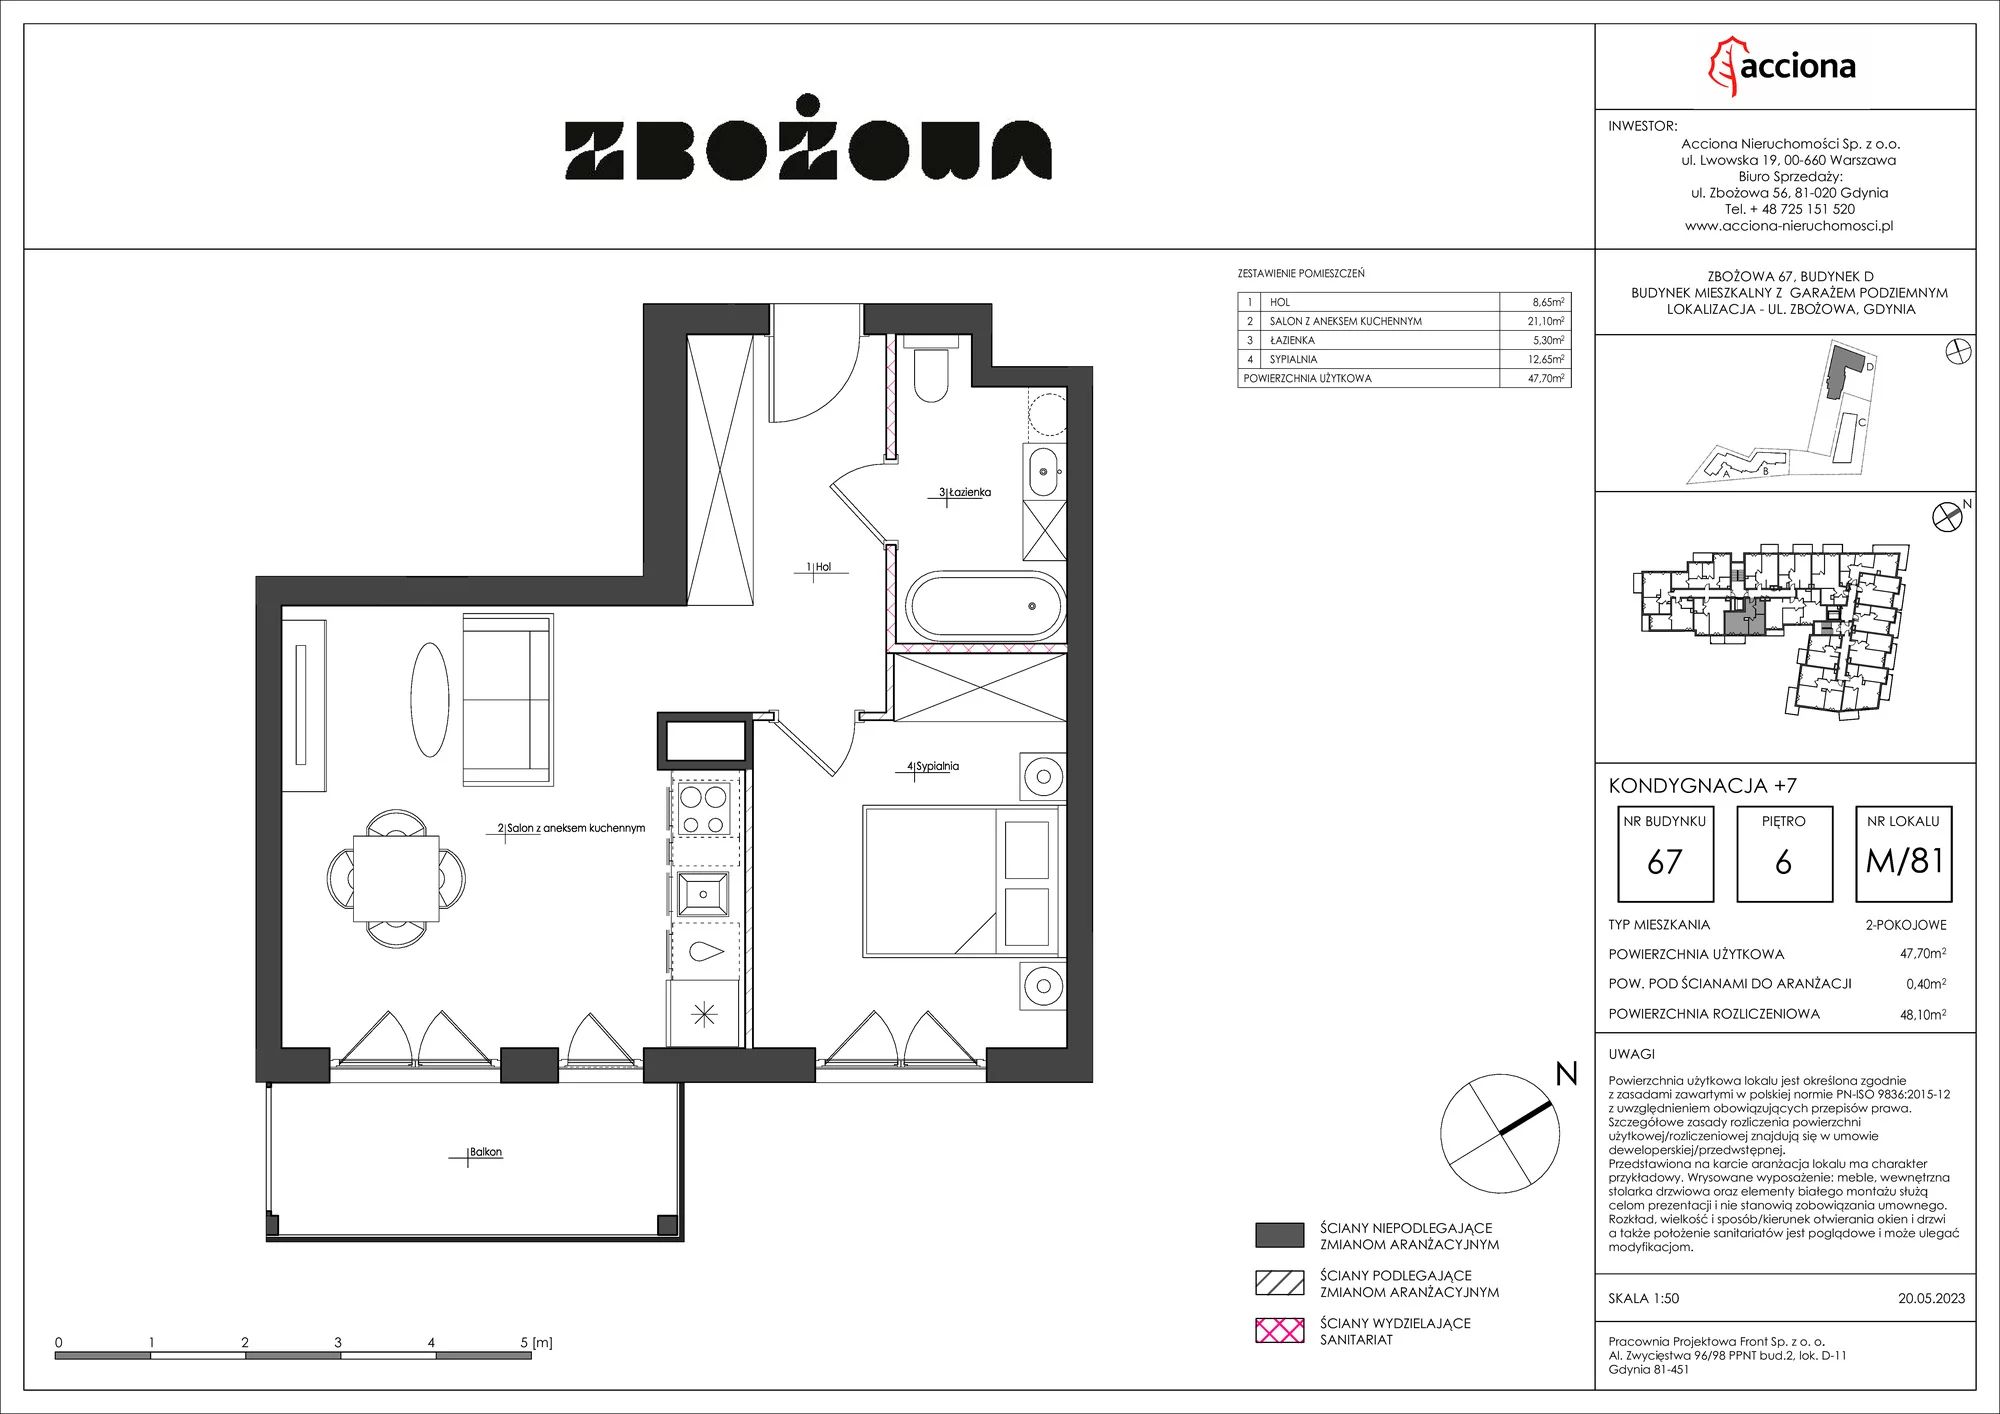 Mieszkanie 48,10 m², piętro 6, oferta nr 67.81, Zbożowa, Gdynia, Cisowa, ul. Zbożowa